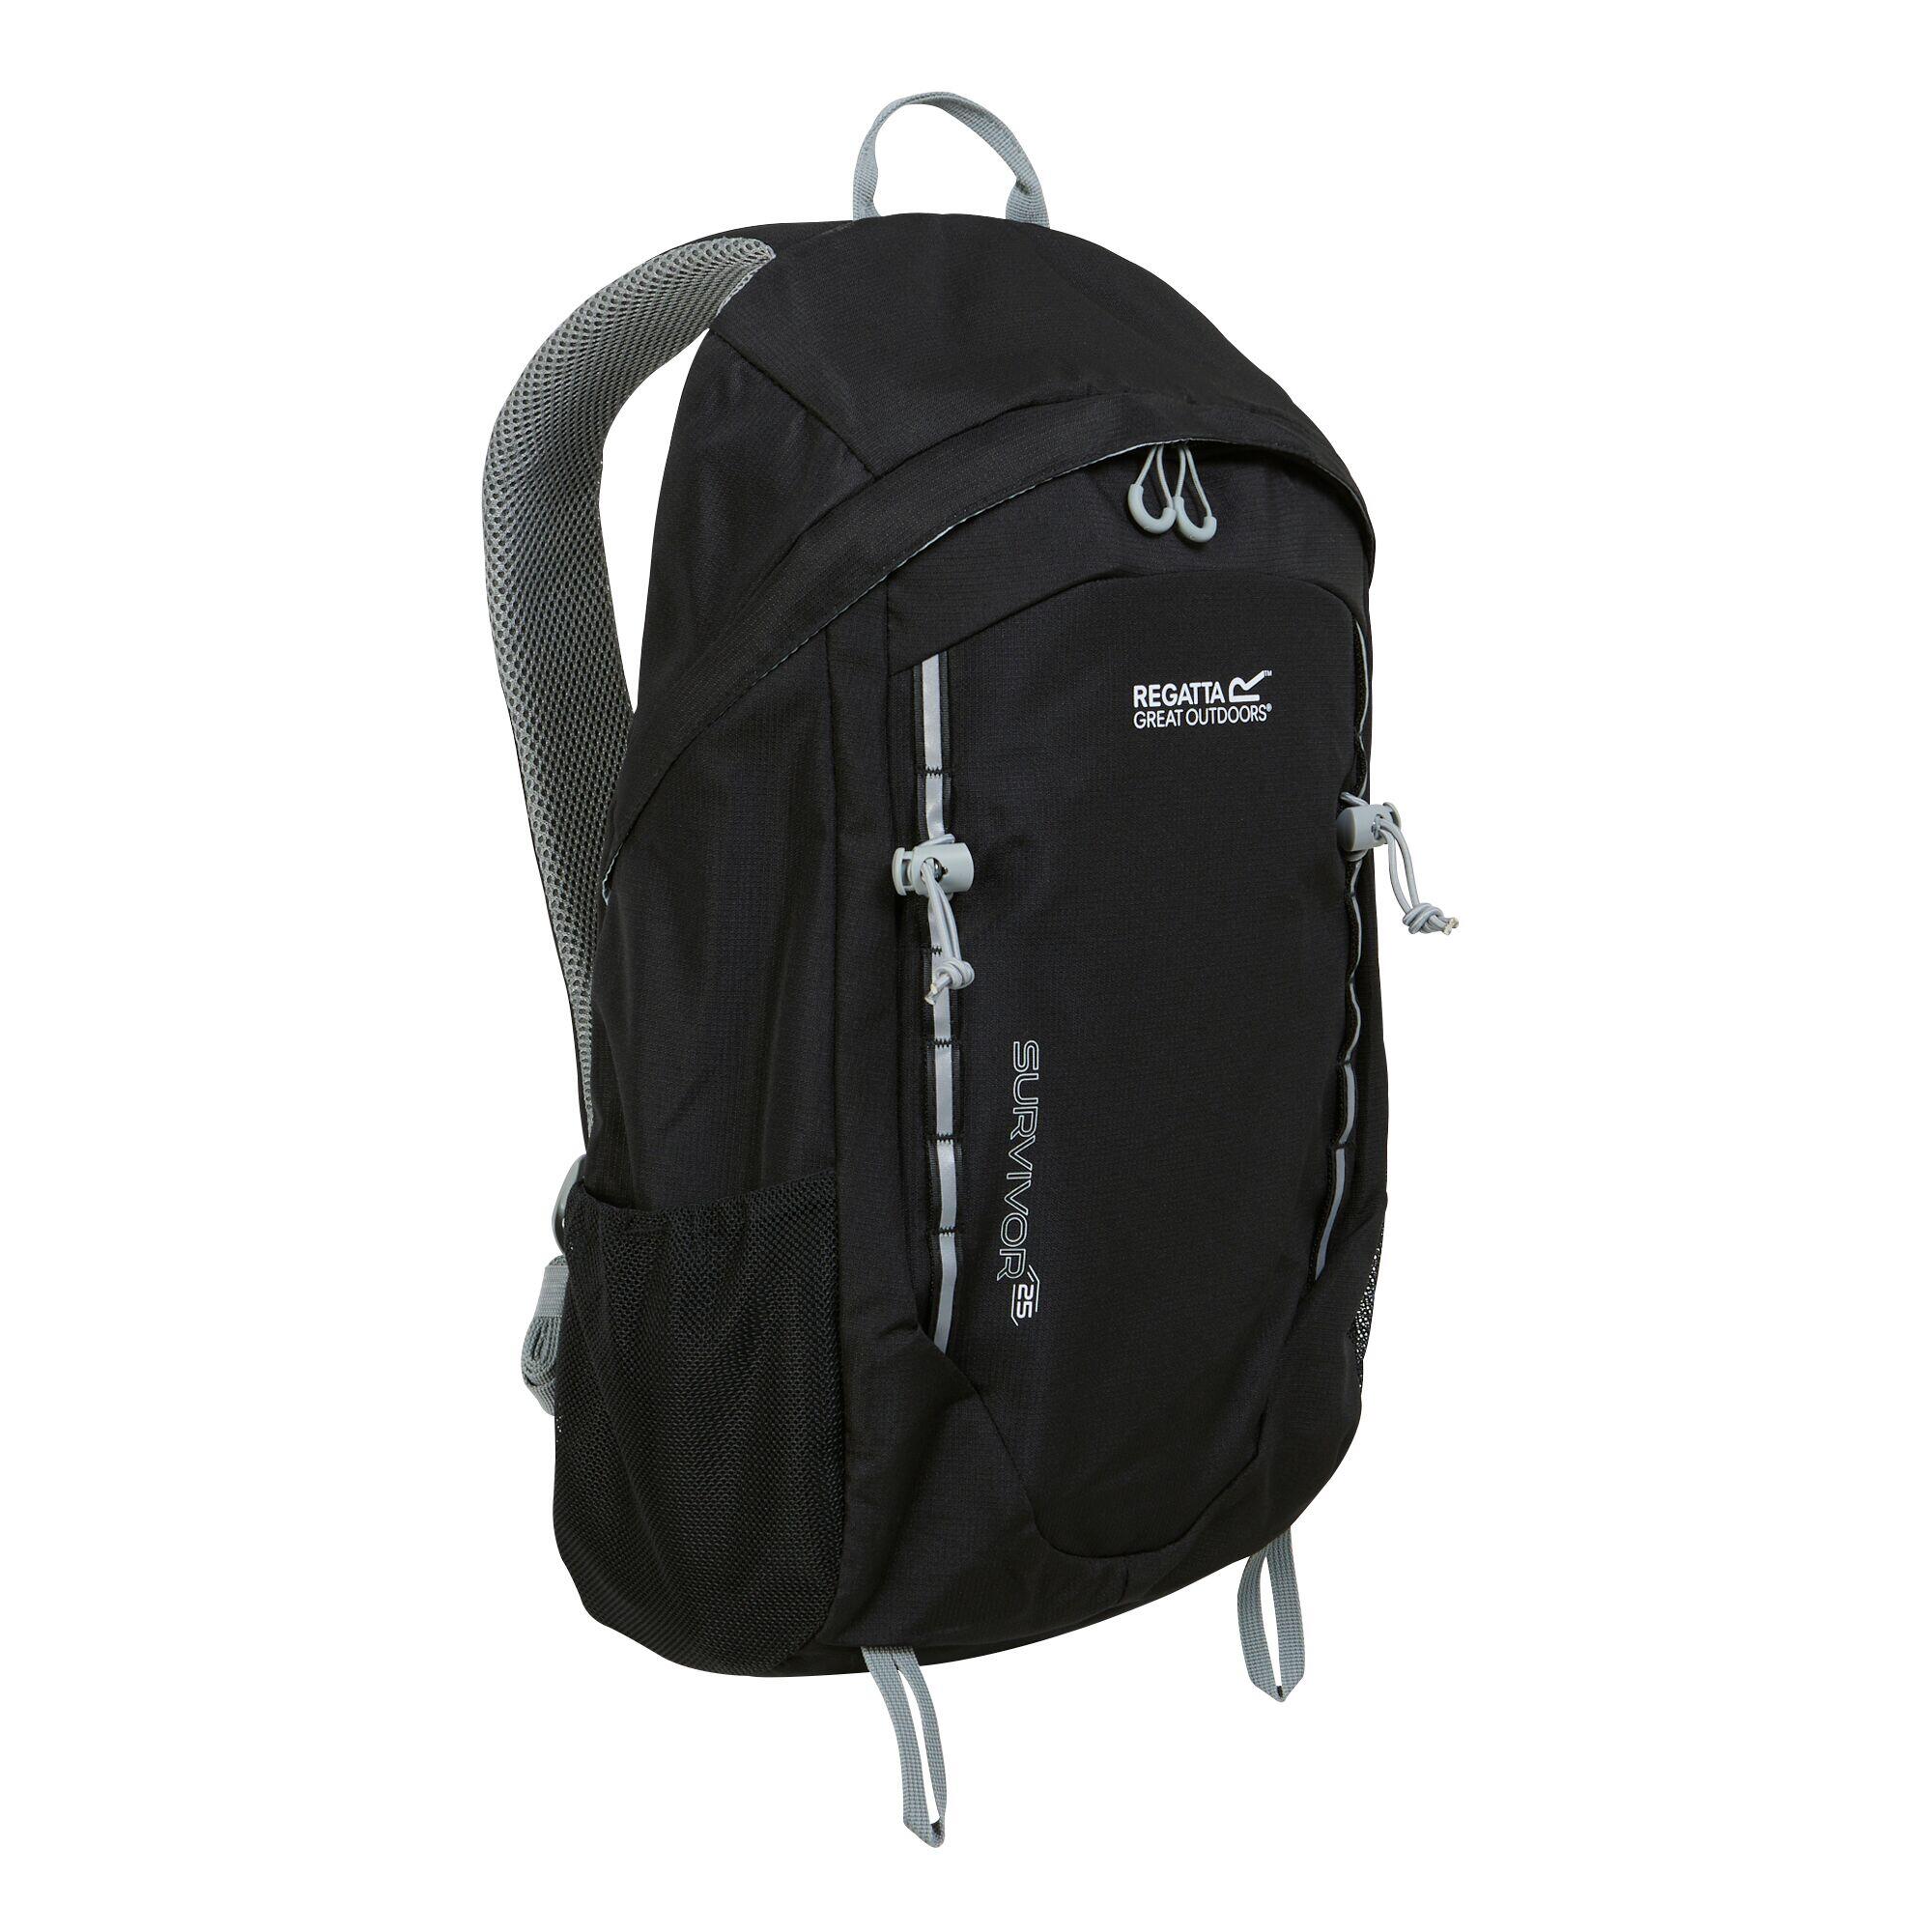 REGATTA Survivor V4 25L Hiking Backpack